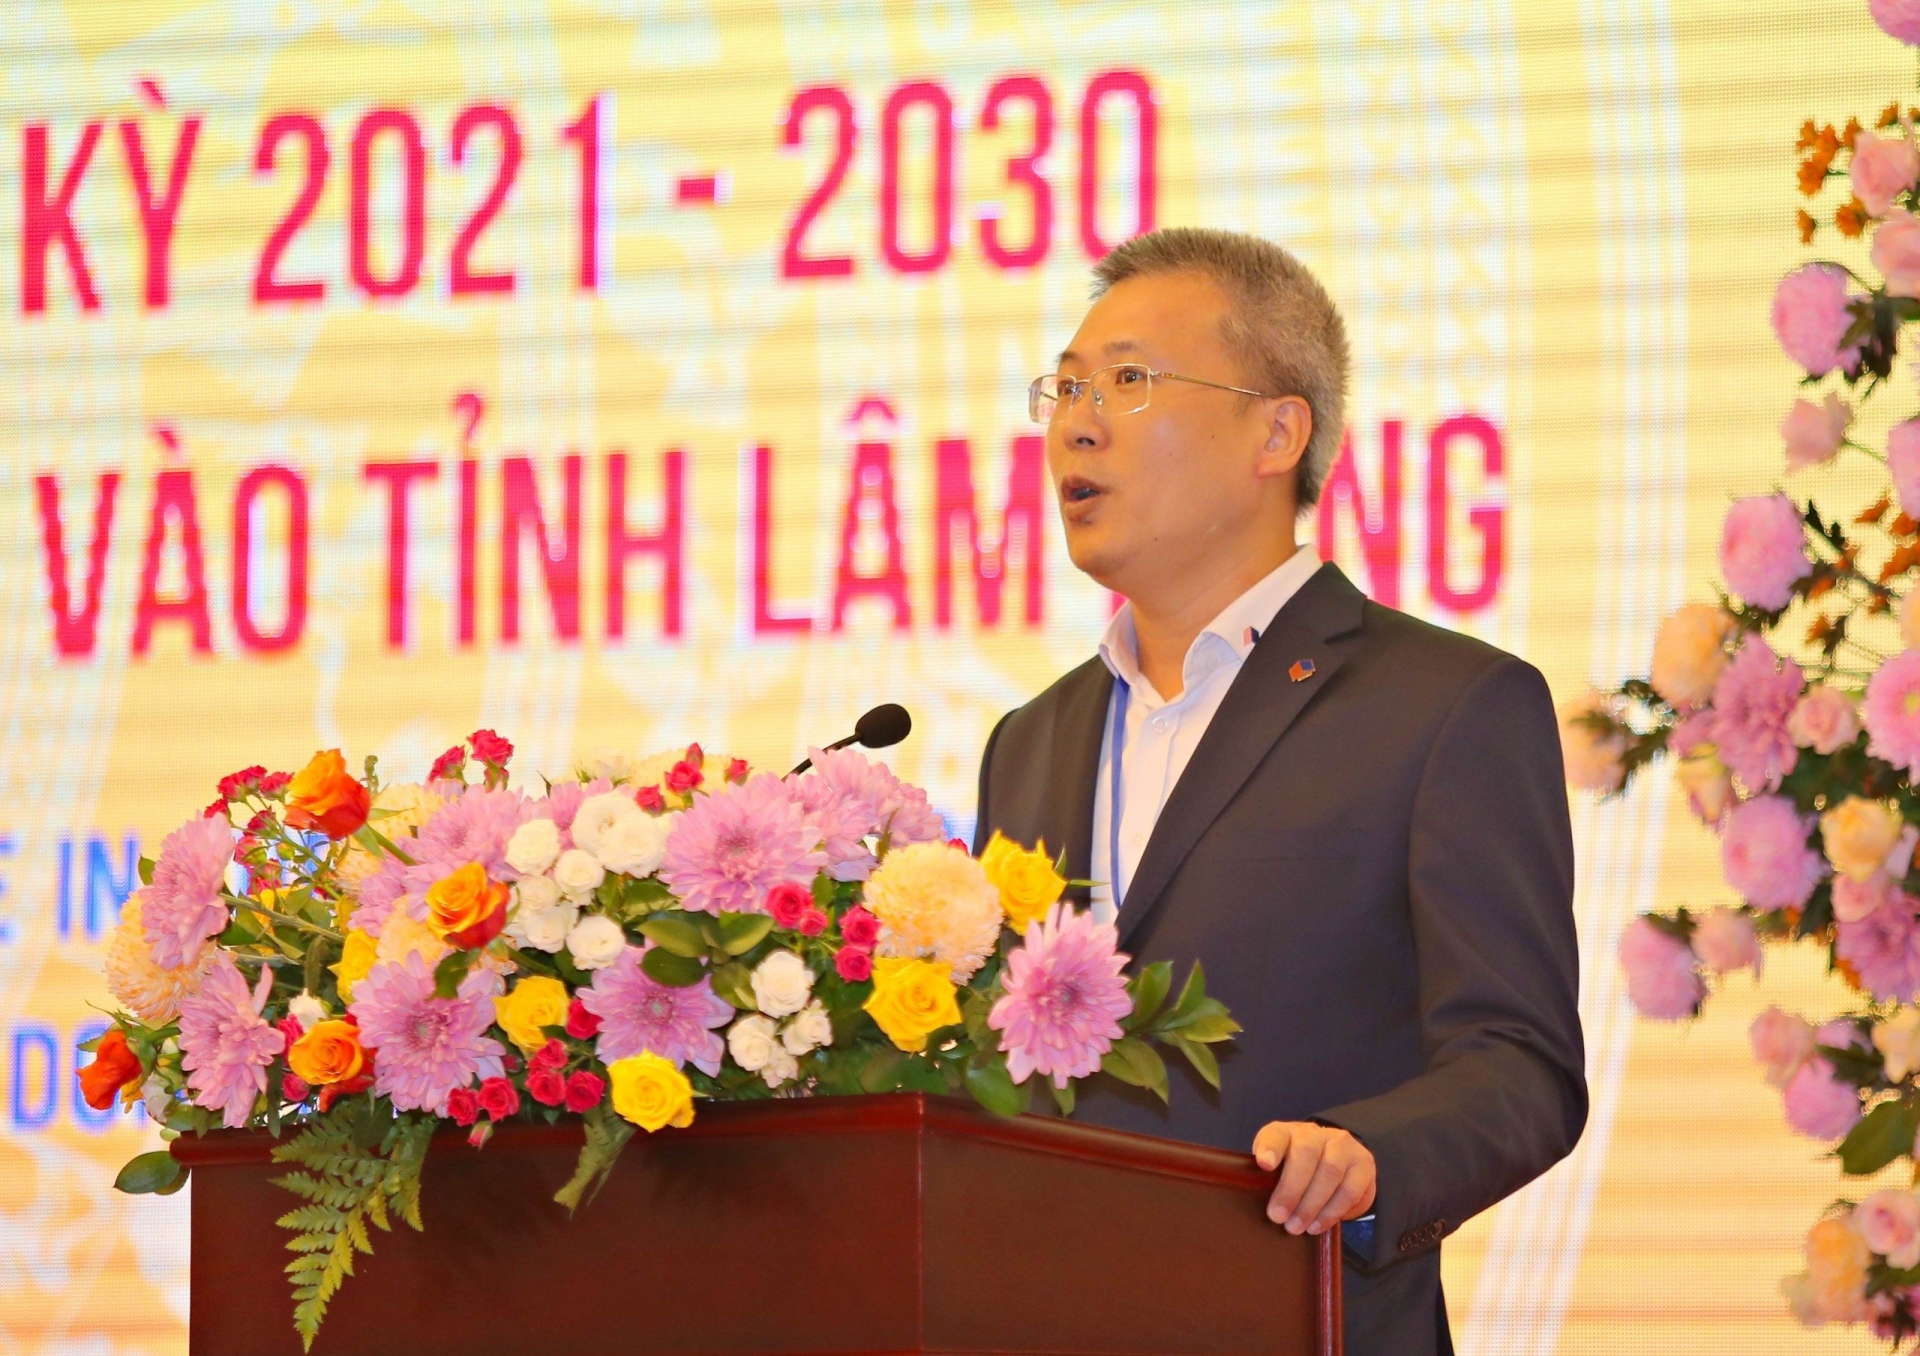 Ông Lê Huỳnh Mai – Phó Chủ tịch Tập đoàn Đèo Cả phát biểu bày tỏ quyết tâm đầu tư tuyến cao tốc Tân Phú - Bảo Lộc và đề xuất báo cáo đến Thủ tướng hỗ trợ tháo gỡ khó khăn về vay vốn đầu tư